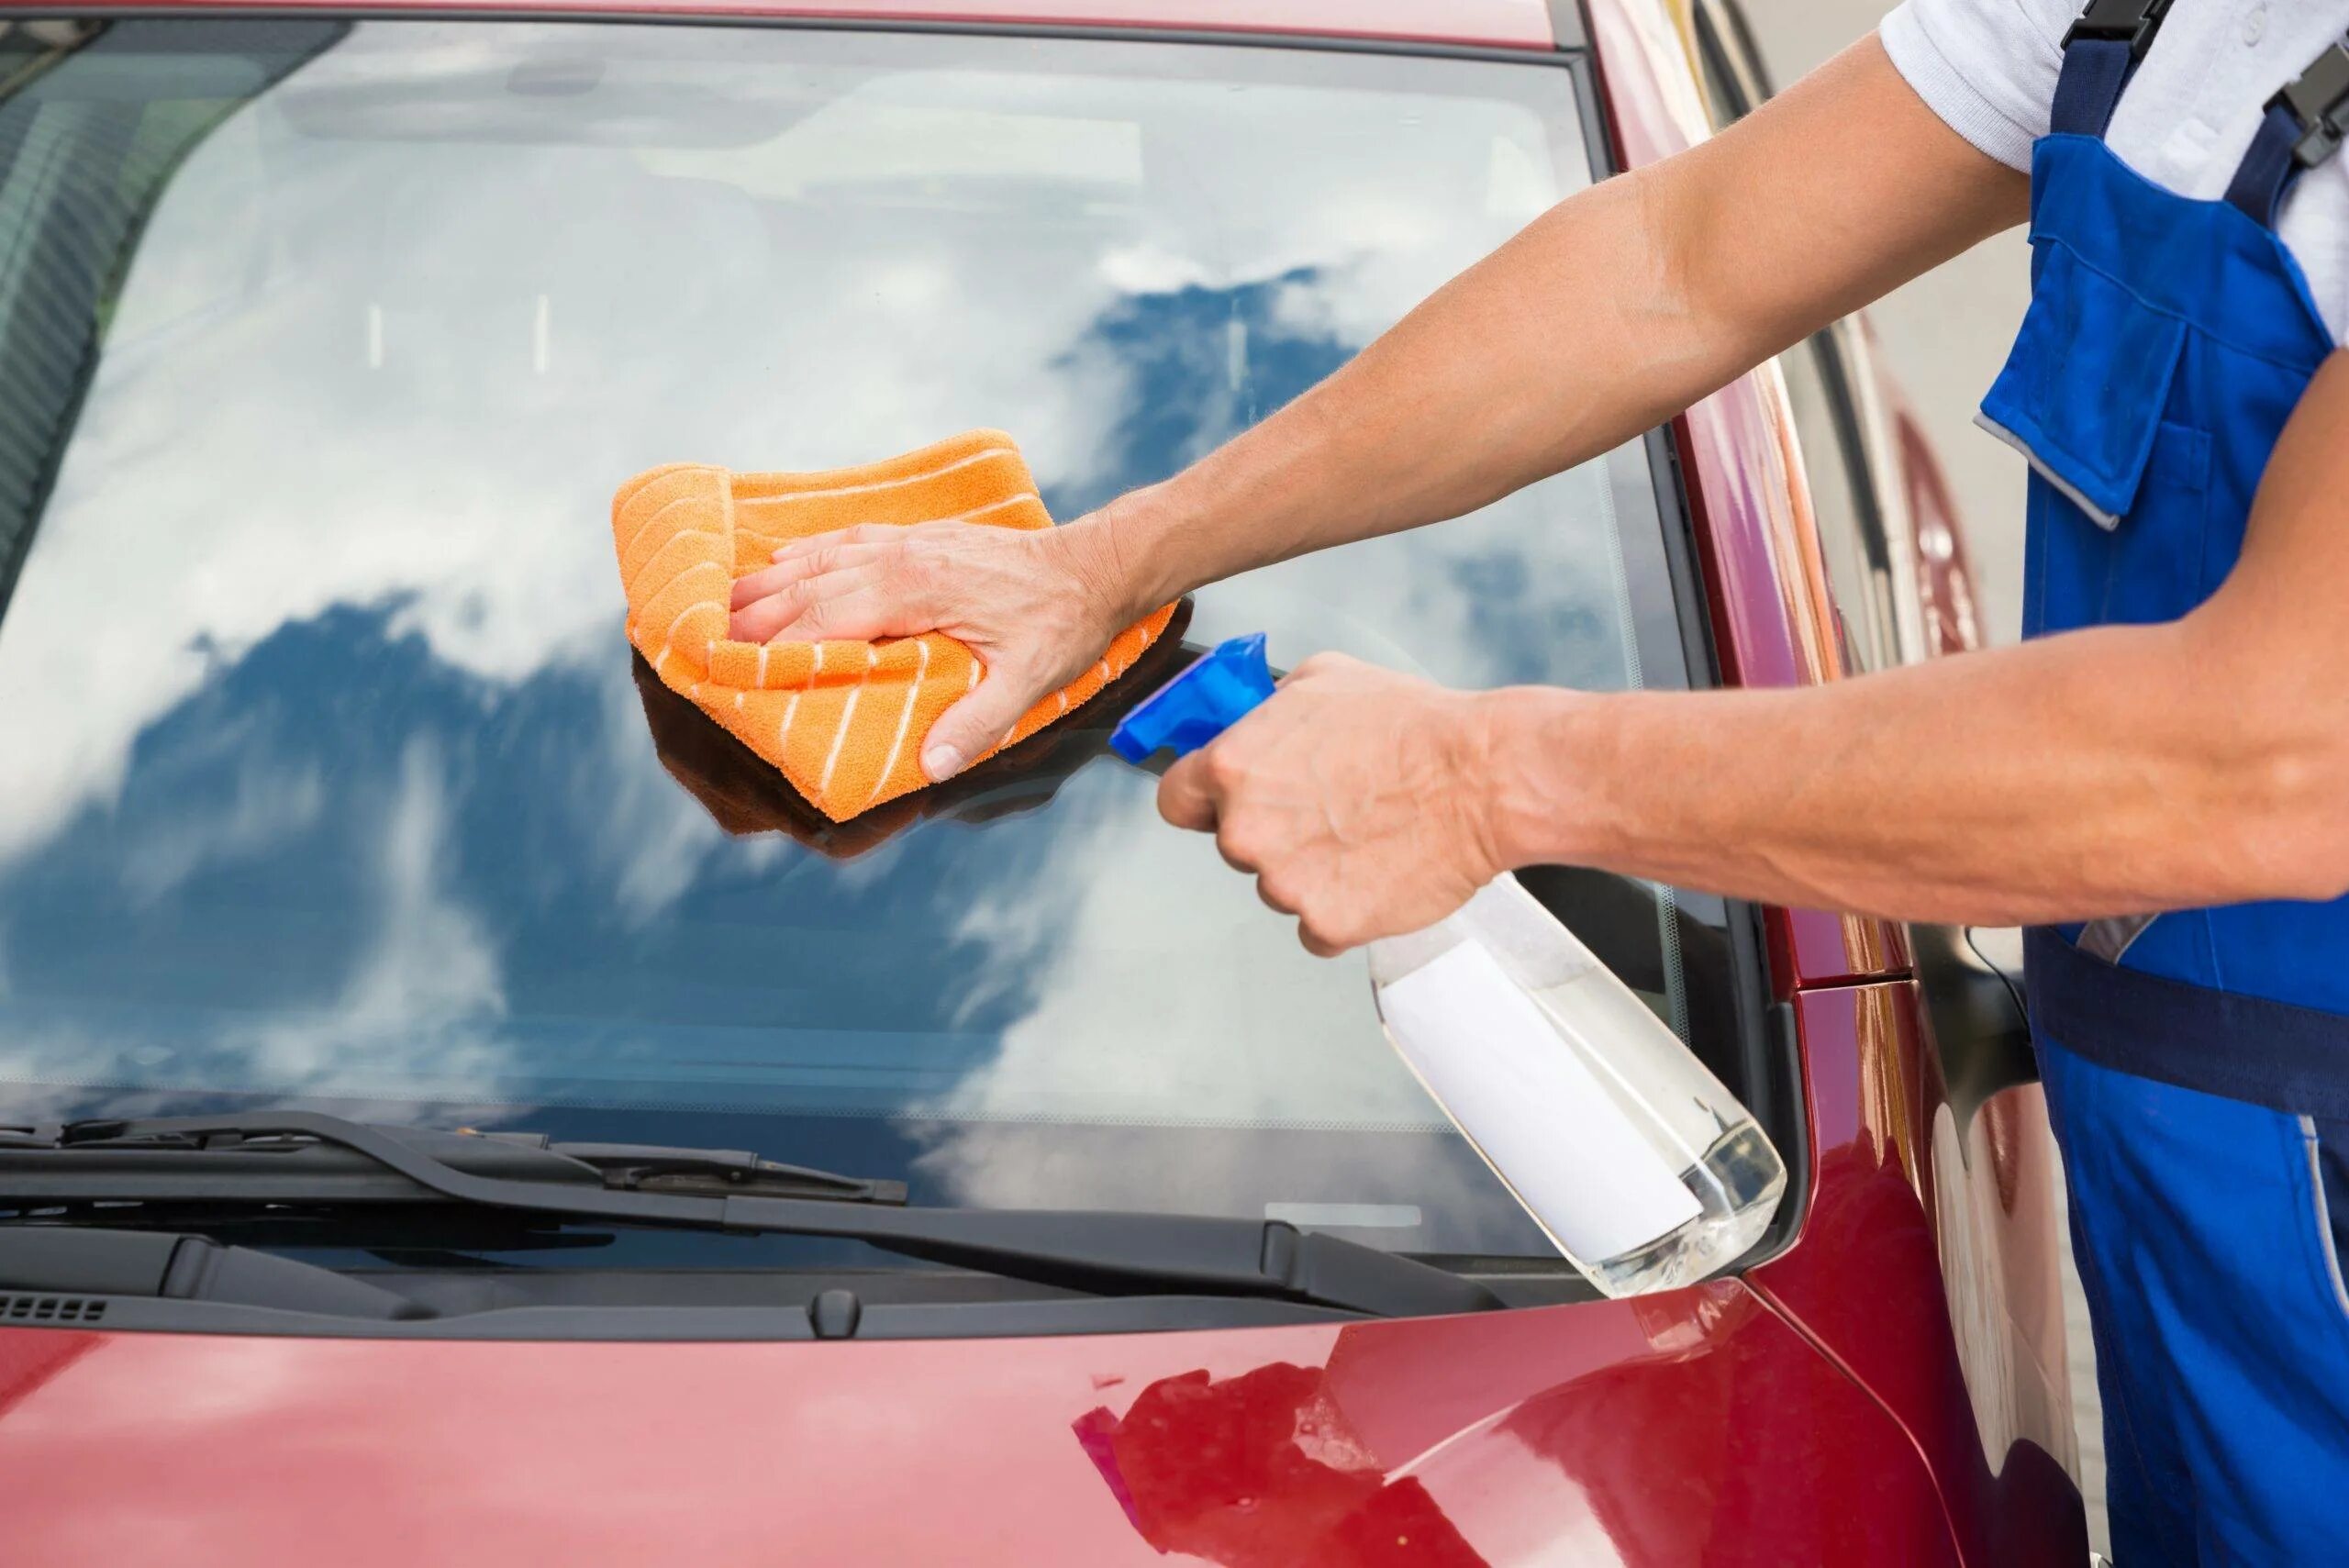 Мытье машины руками. Мойка стекол автомобиля. Мойка машины. Протирают стекла в машине. Для мытья стекол автомобиля.